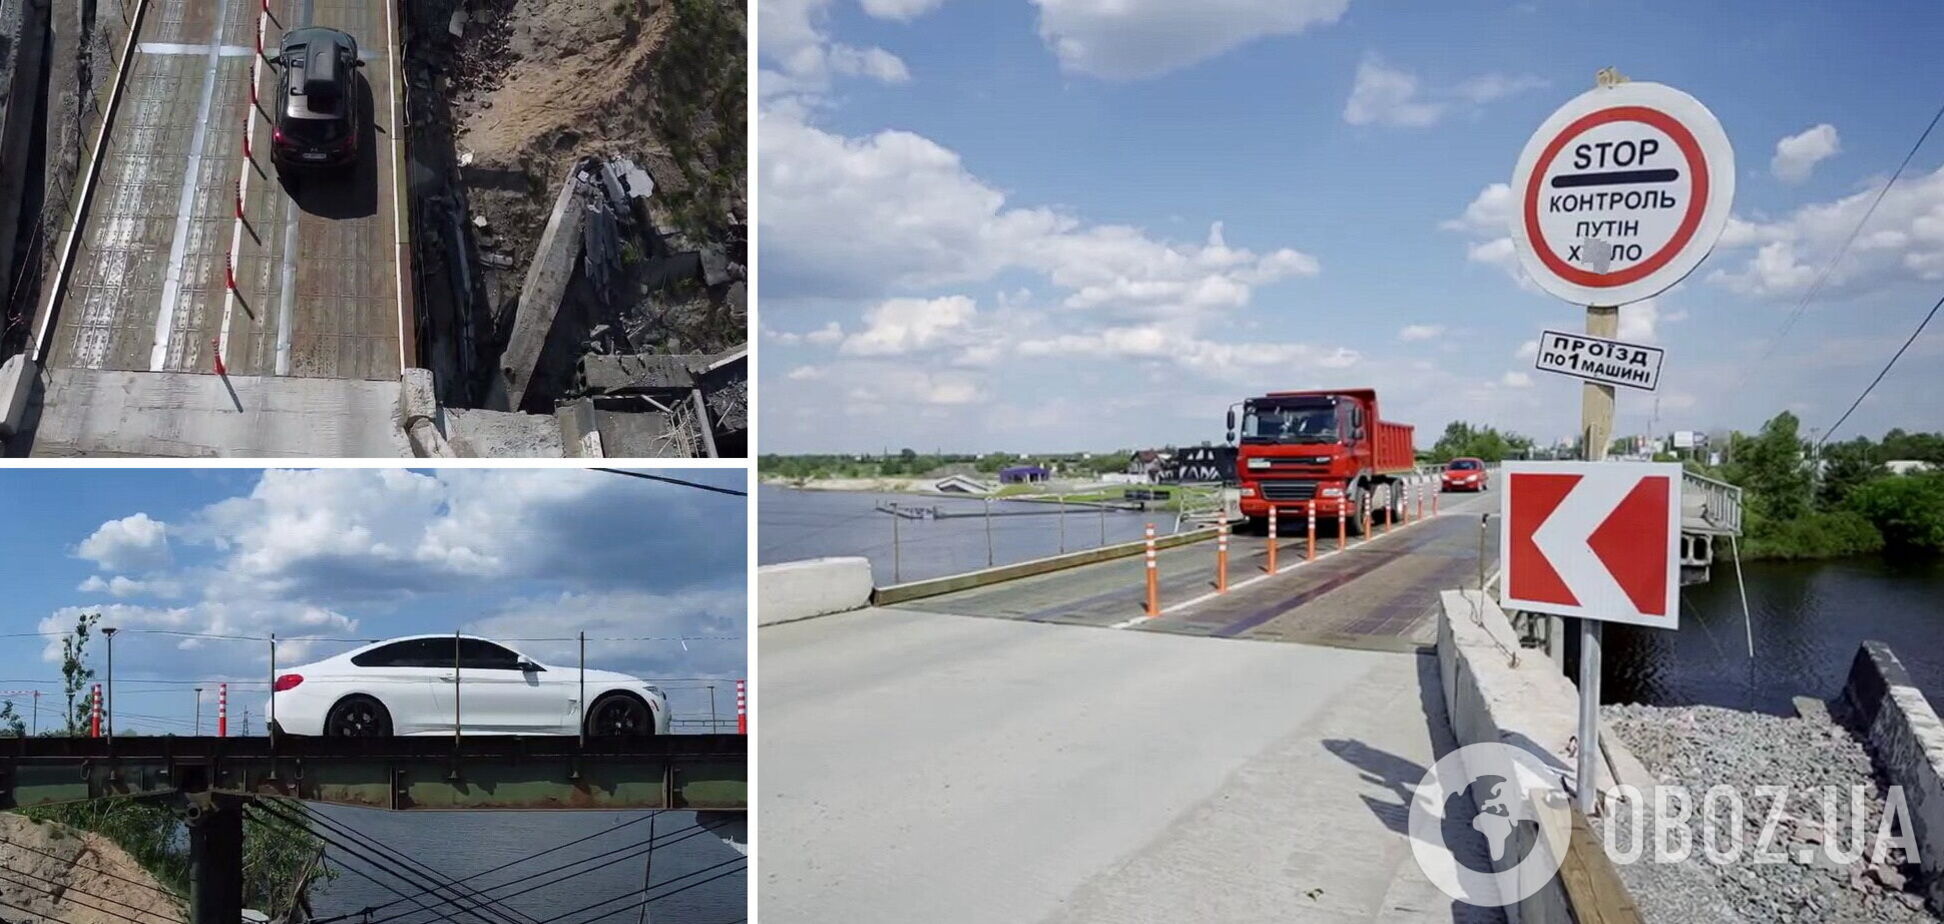 Специалисты восстановили еще один уничтоженный мост